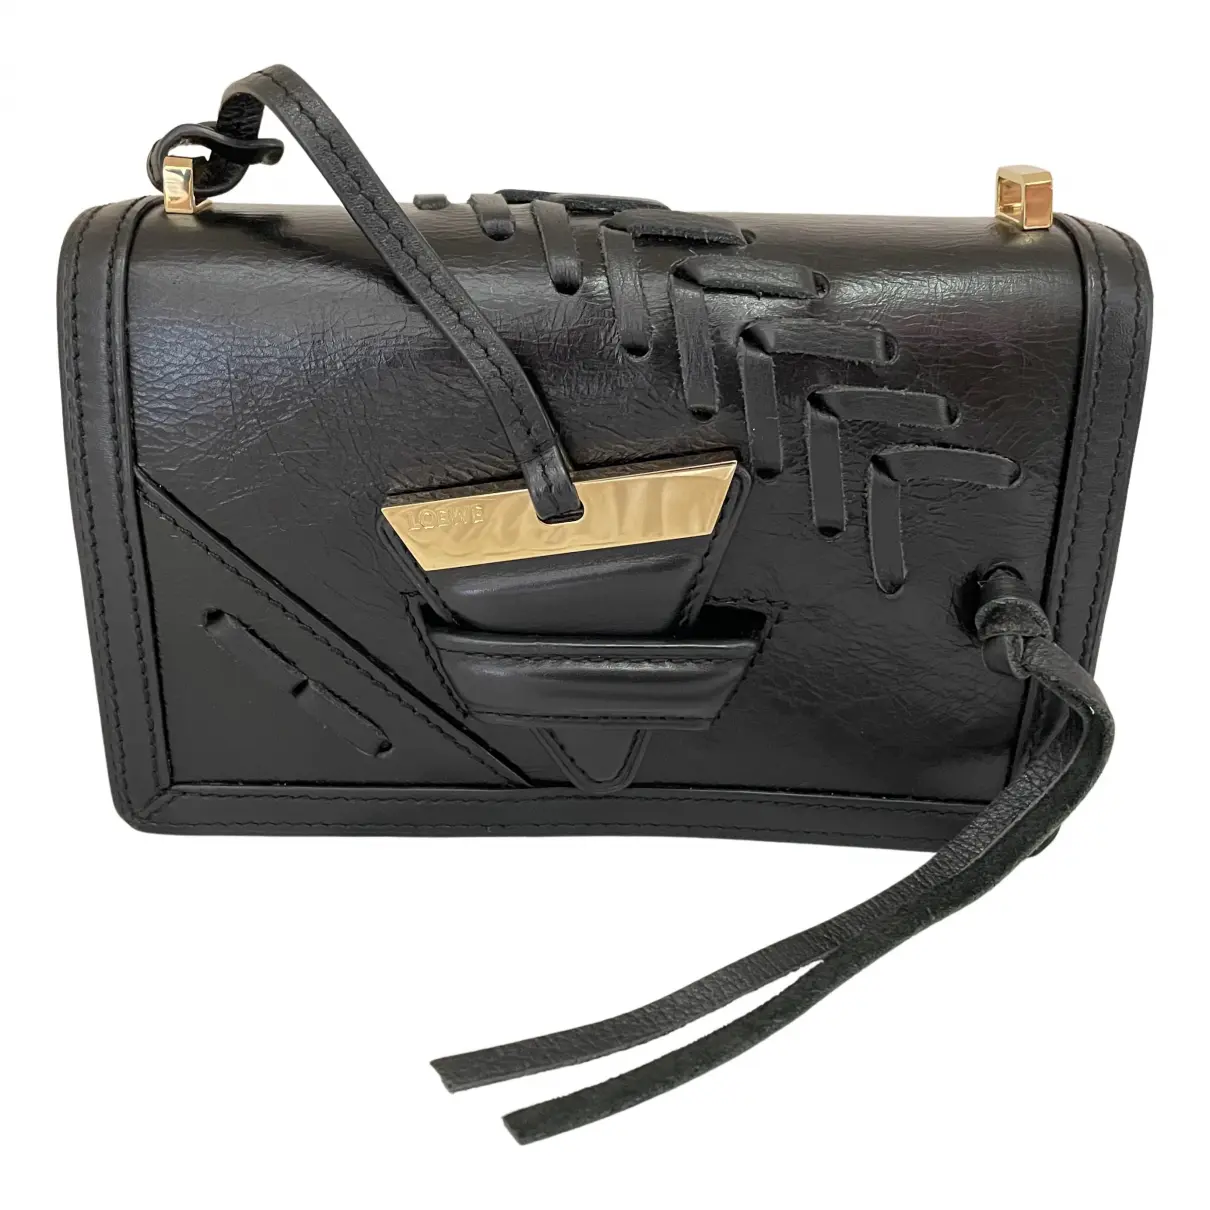 Barcelona leather crossbody bag Loewe